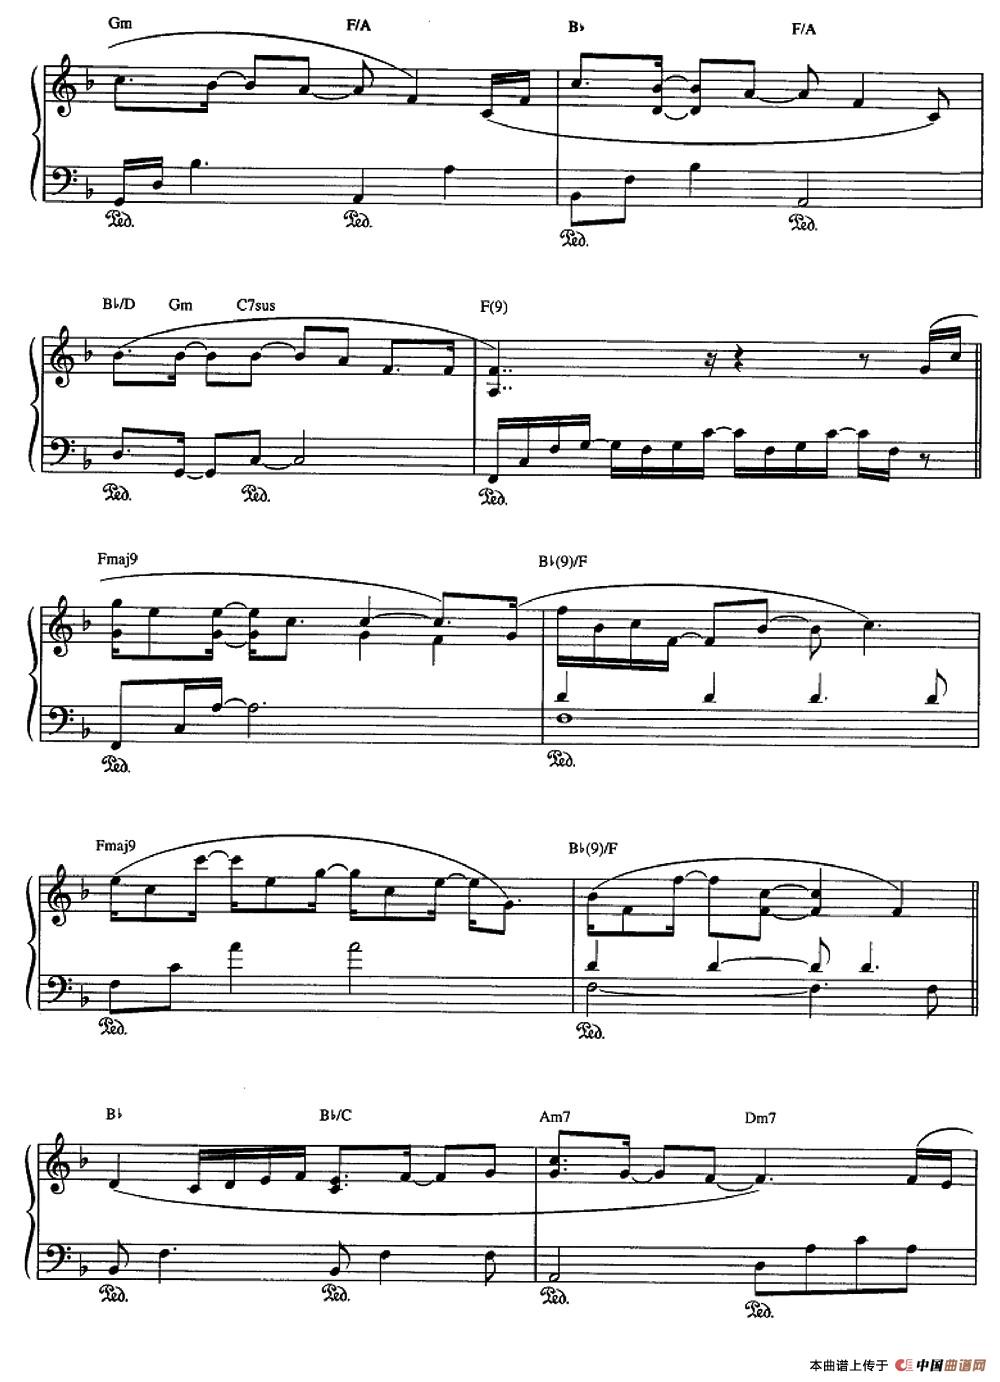 《SOUND OF YPUR VOICE》钢琴曲谱图分享